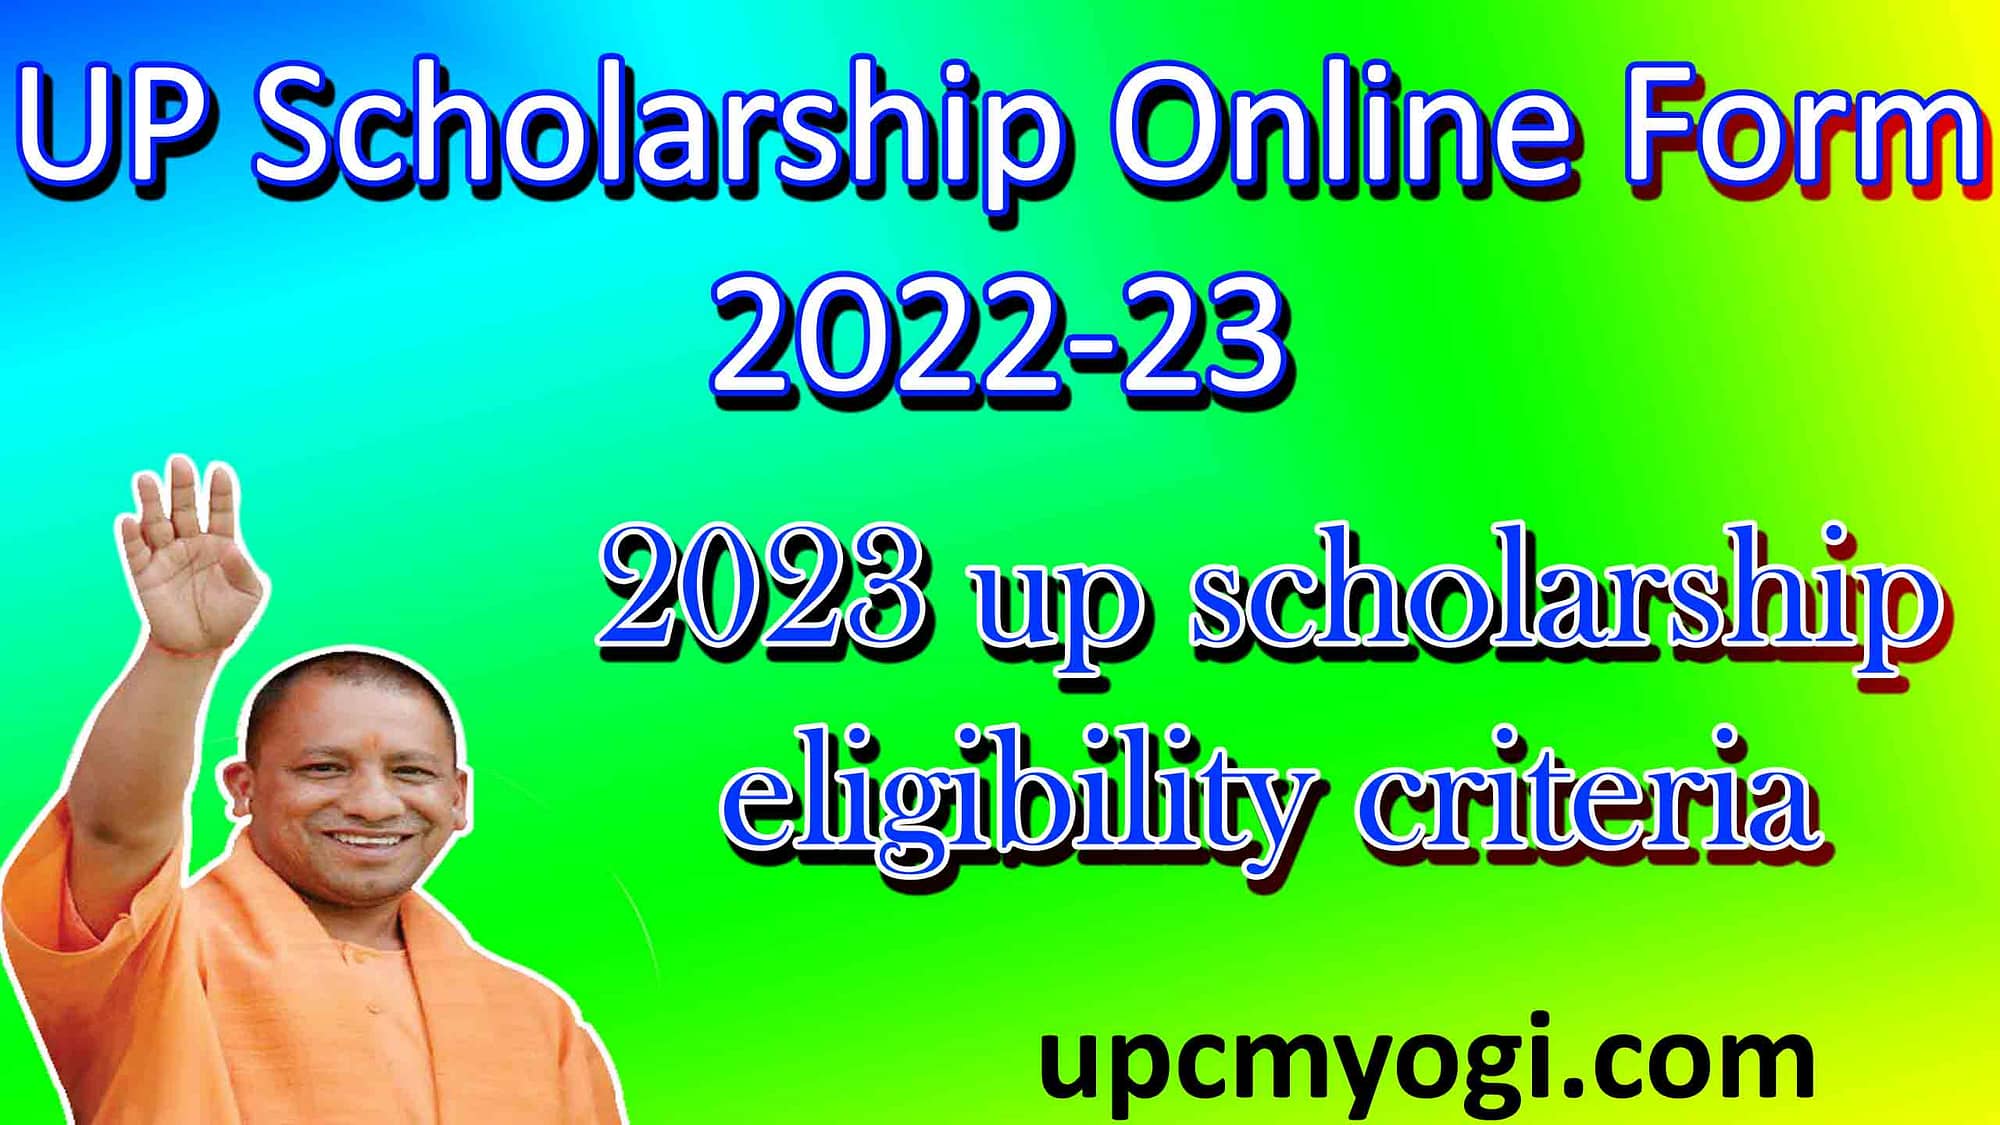 UP Scholarship Online Form 2022-23 की आवेदन प्रक्रिया शुरू, तथा ऑनलाइन आवेदन की महत्वपूर्ण जानकारी जानें 